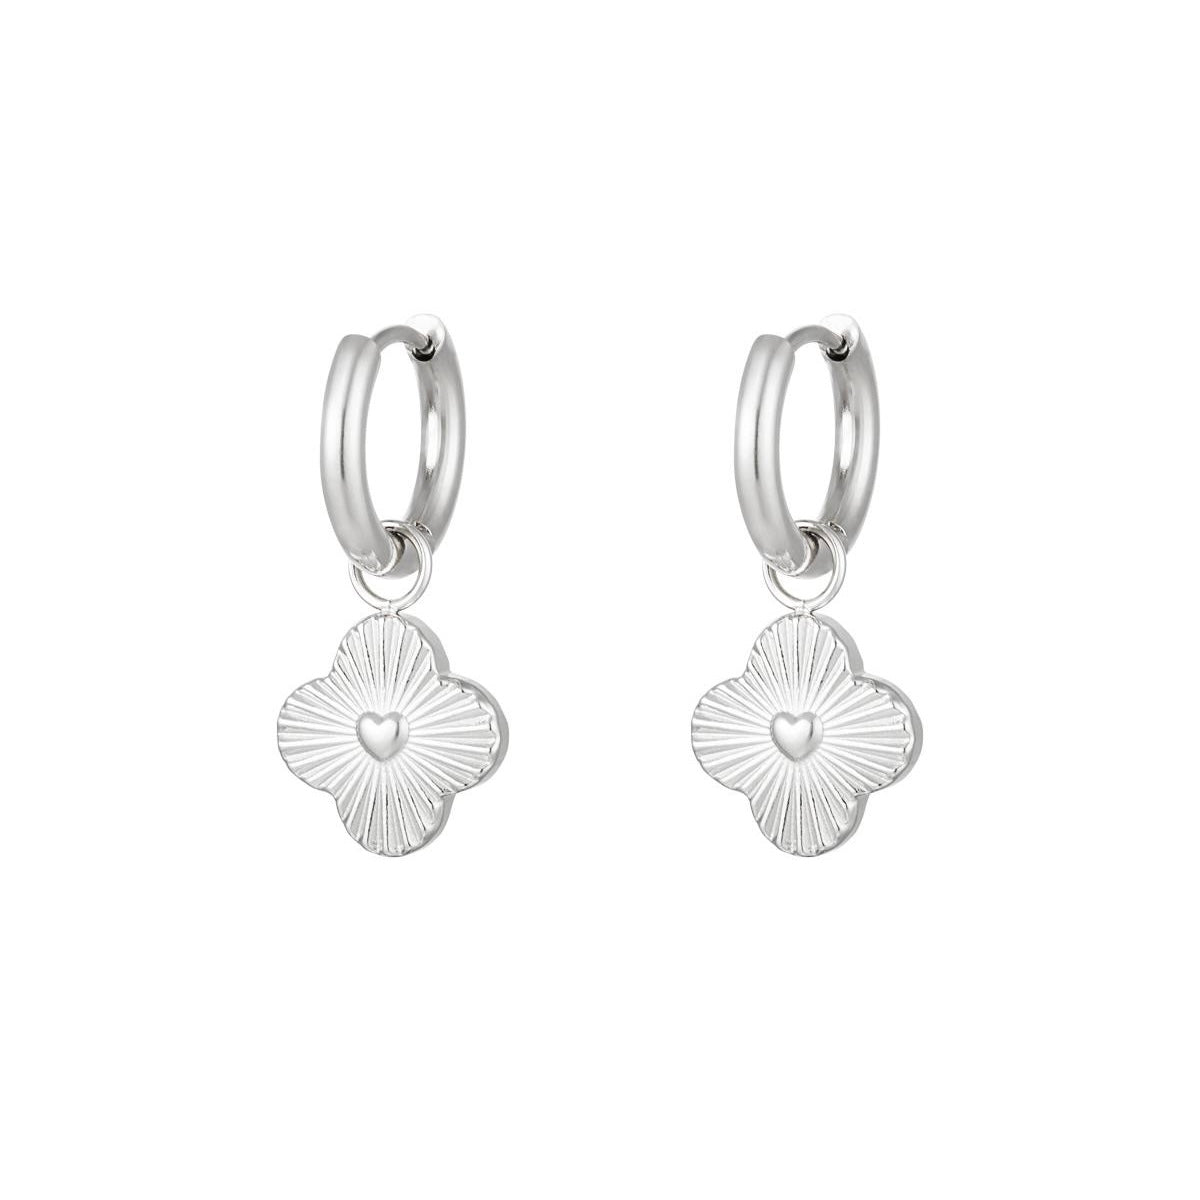 Heart Flower Earrings - Silver - Sieradenbycelin Sieradenbycelin Sieradenbycelin